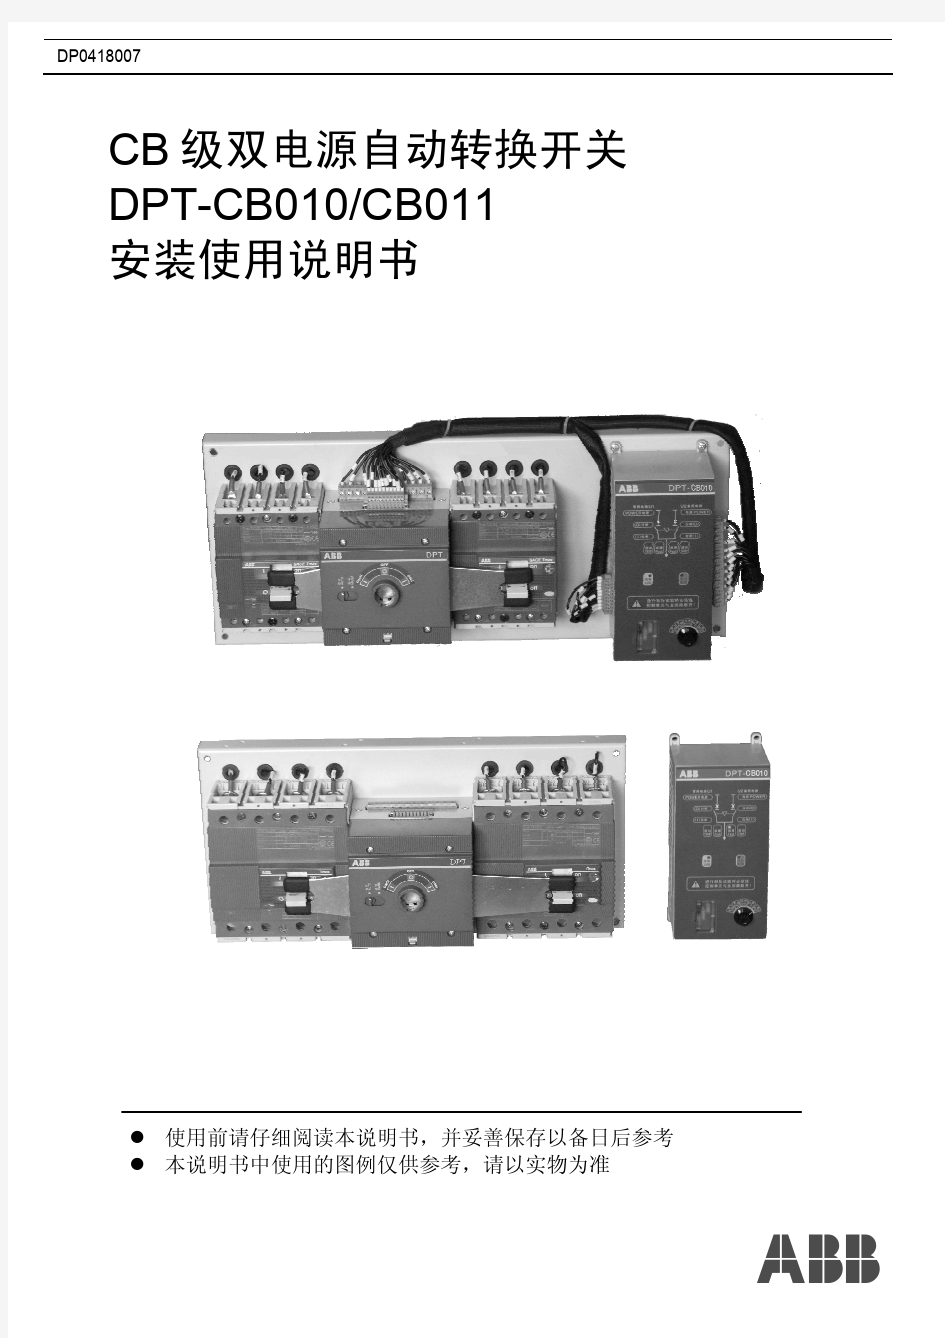 双电源切换装置说明(DPT-CB010,011)